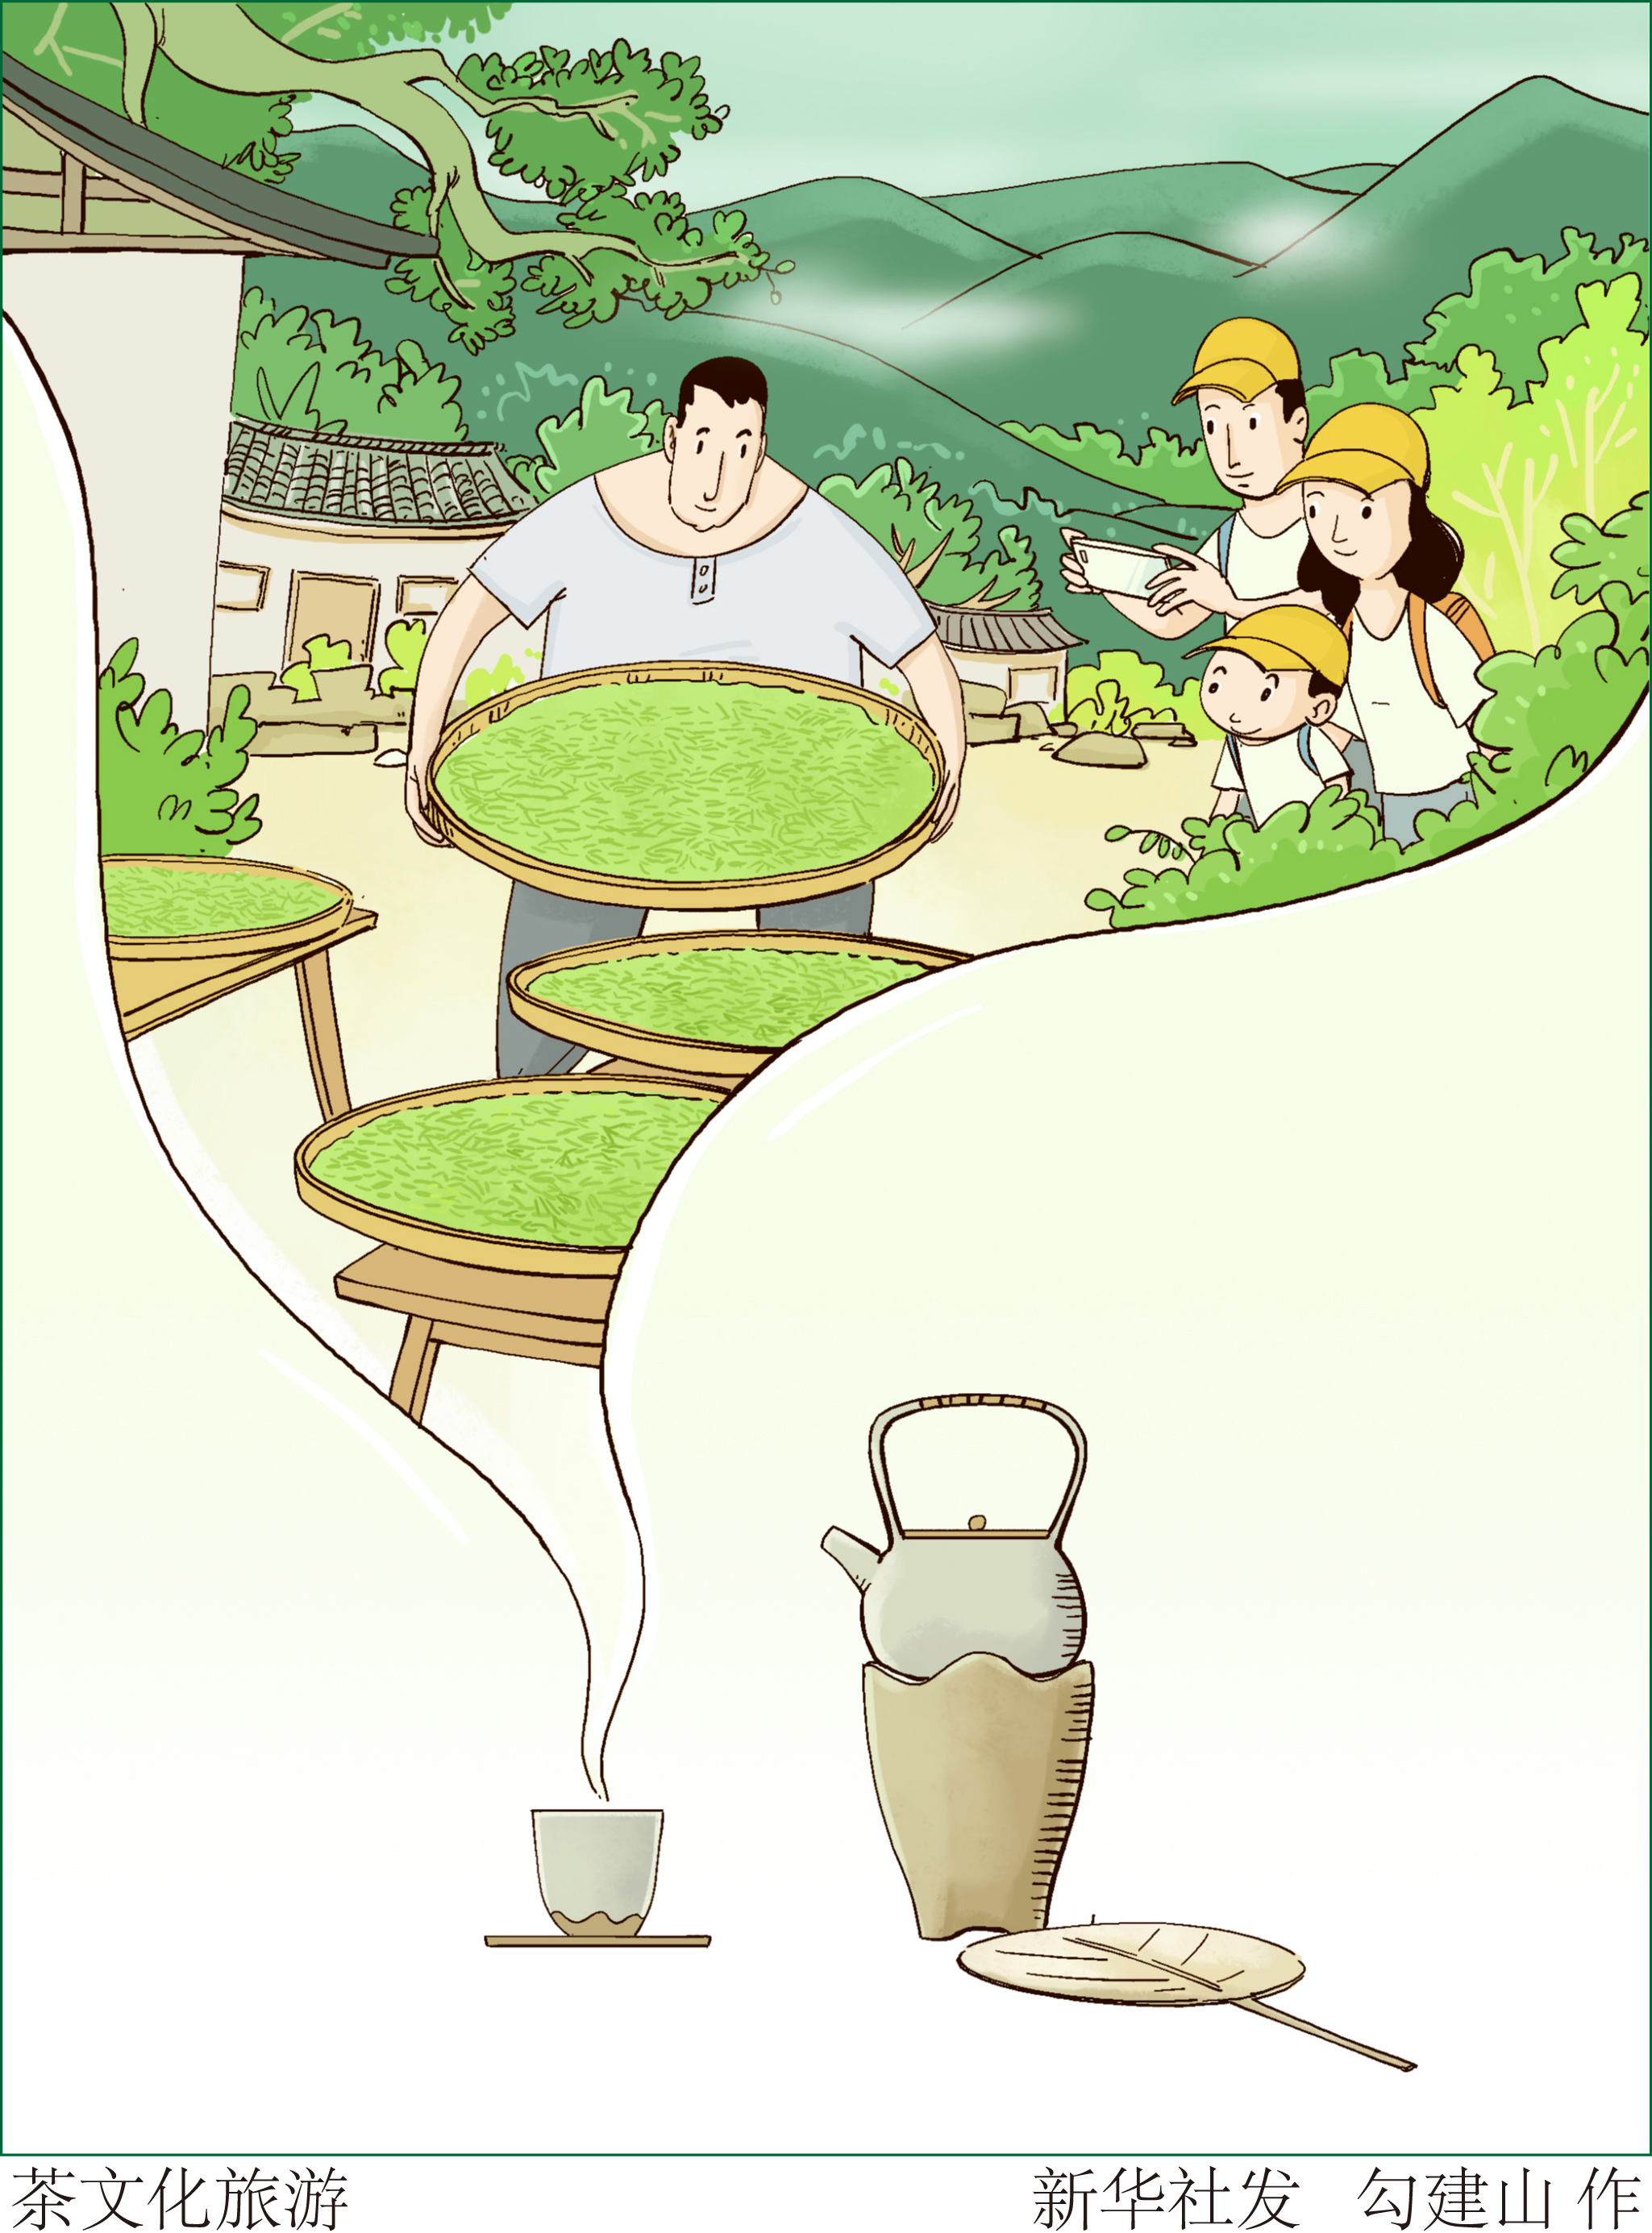 【社会】茶文化旅游